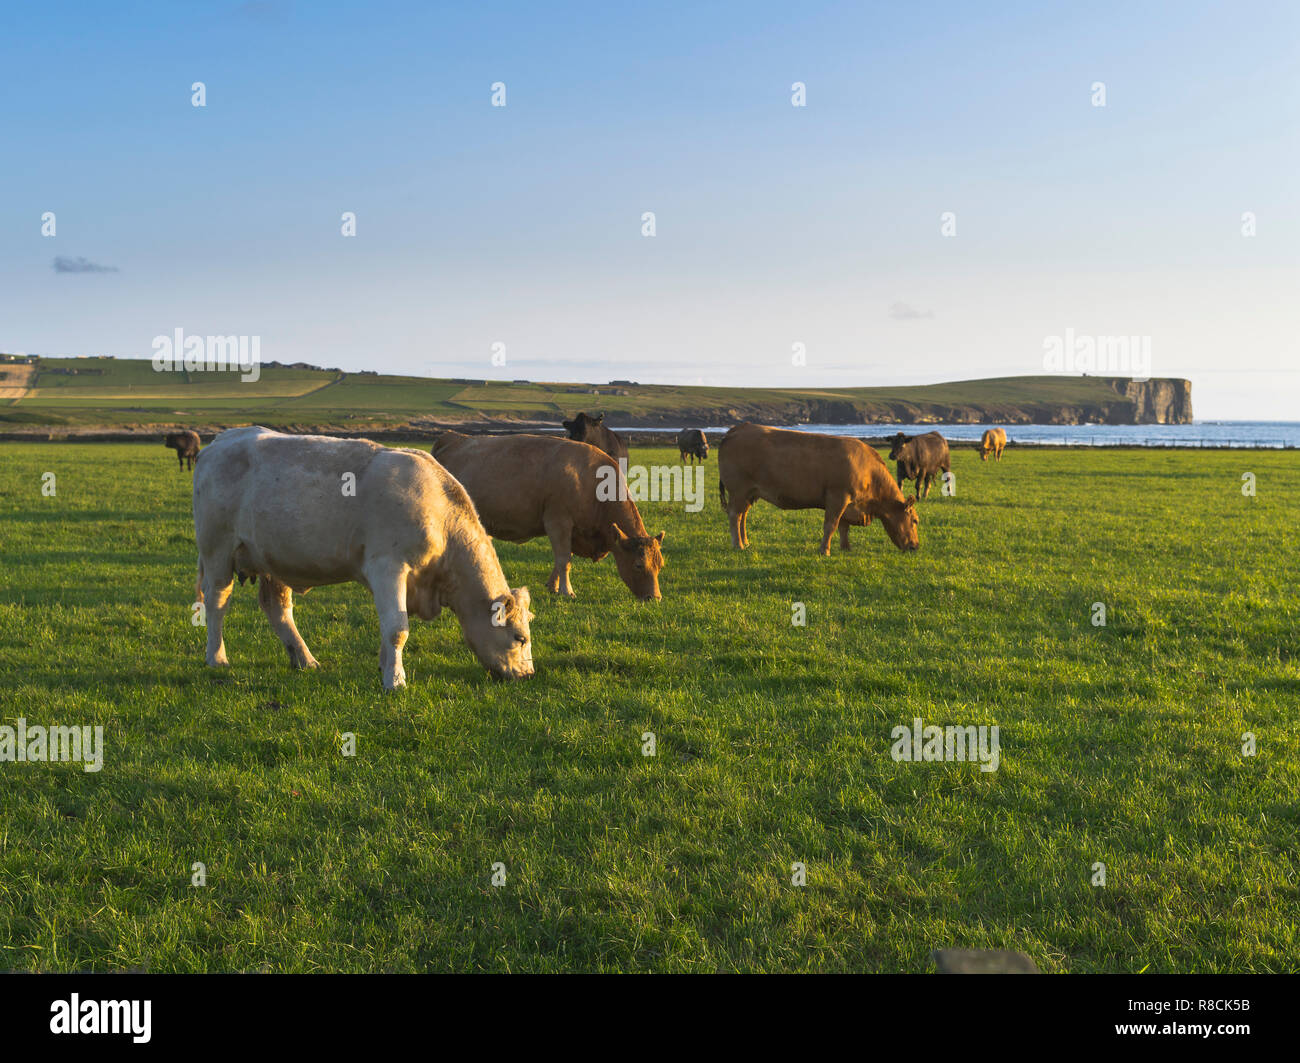 dh bovins de boucherie BIRSAY ORKNEY vaches pâturage dans un champ Ecosse Royaume-Uni manger herbe nourrir paysage de troupeau Banque D'Images